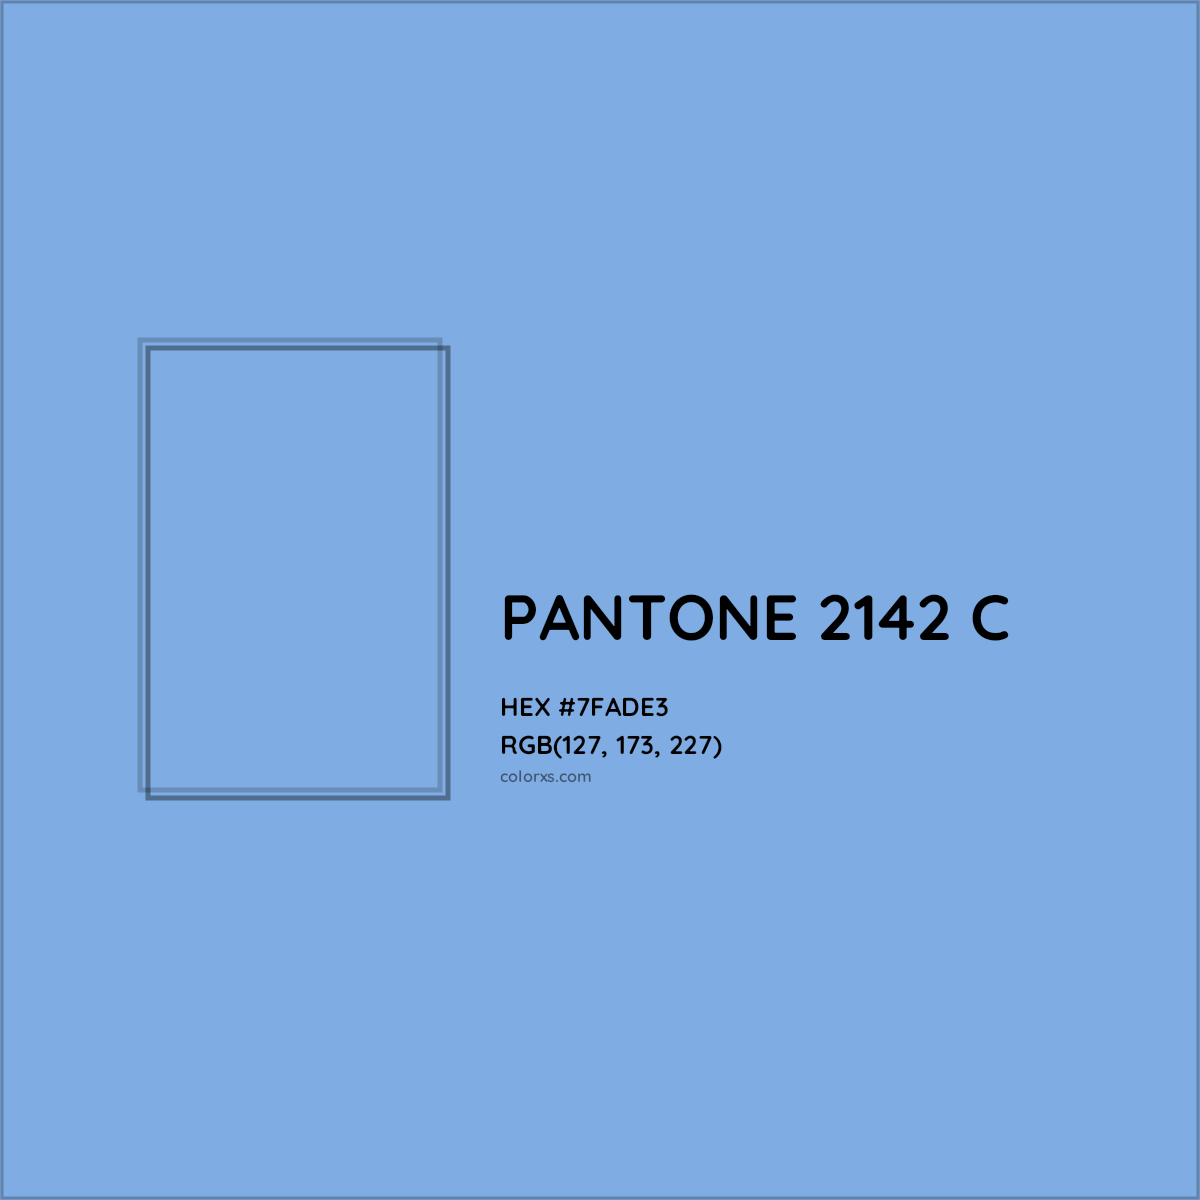 HEX #7FADE3 PANTONE 2142 C CMS Pantone PMS - Color Code